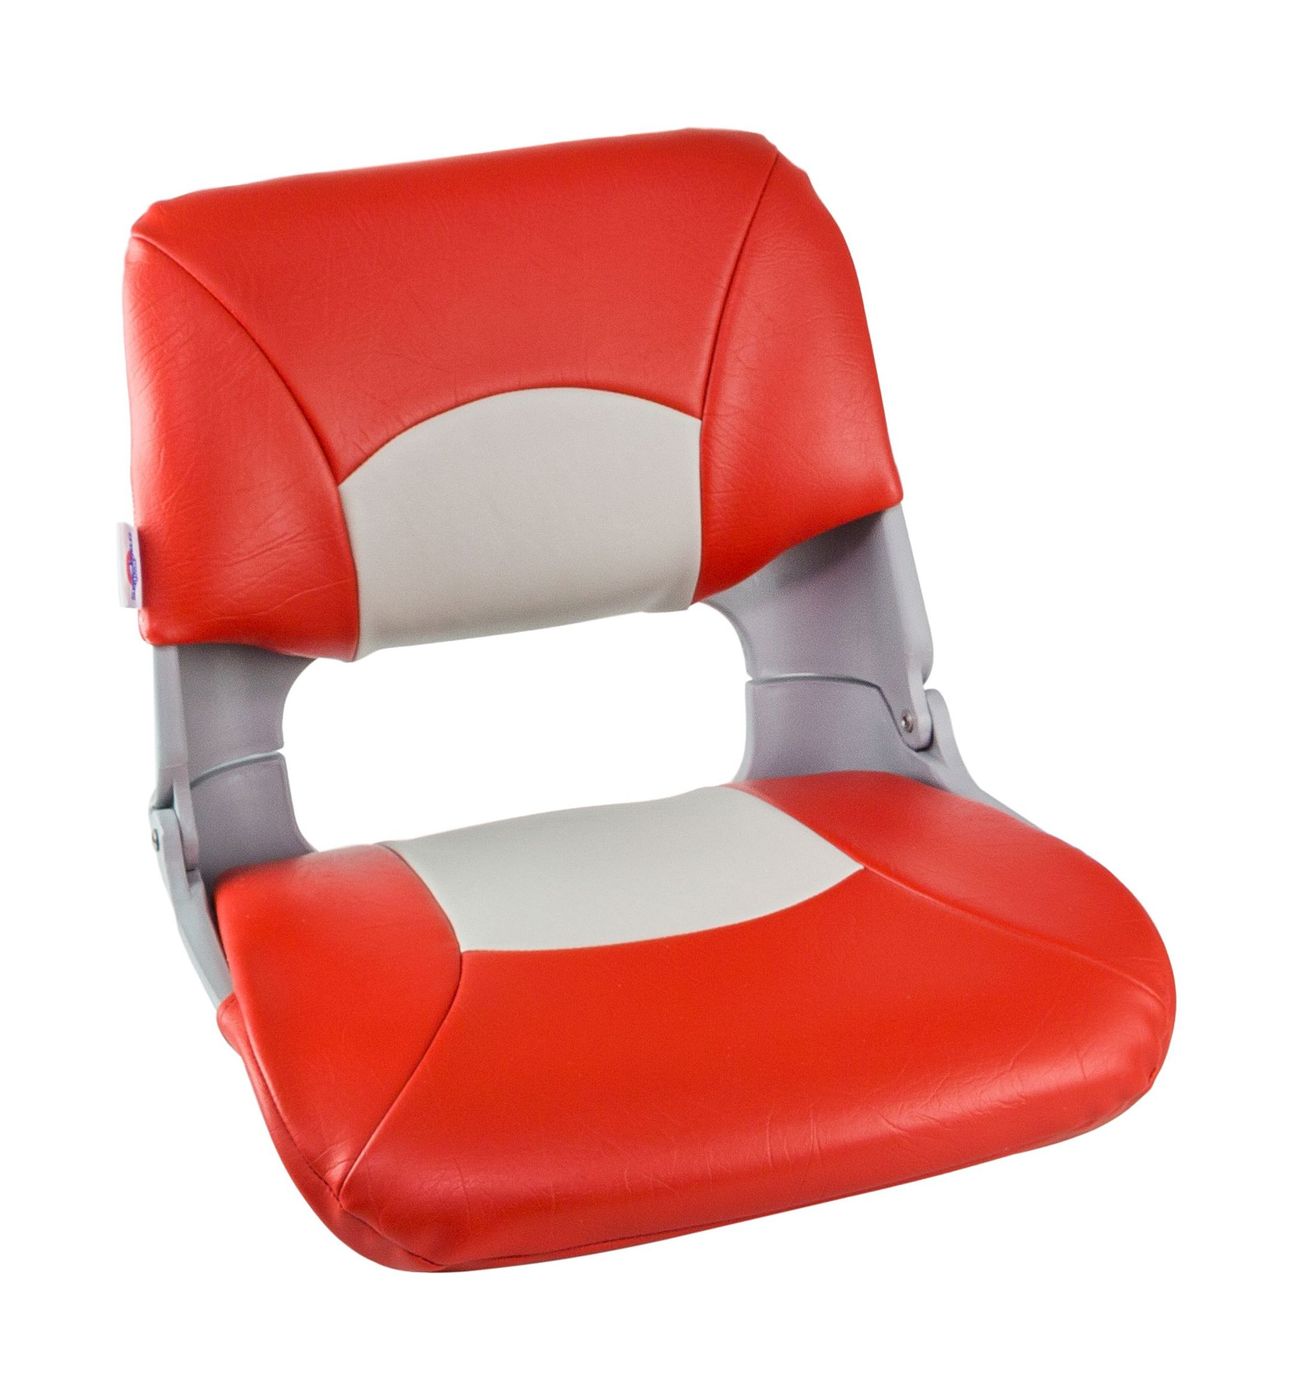 Кресло складное мягкое SKIPPER, цвет серый/красный 1061018 кресло admiral мягкое материал винил 1061420990